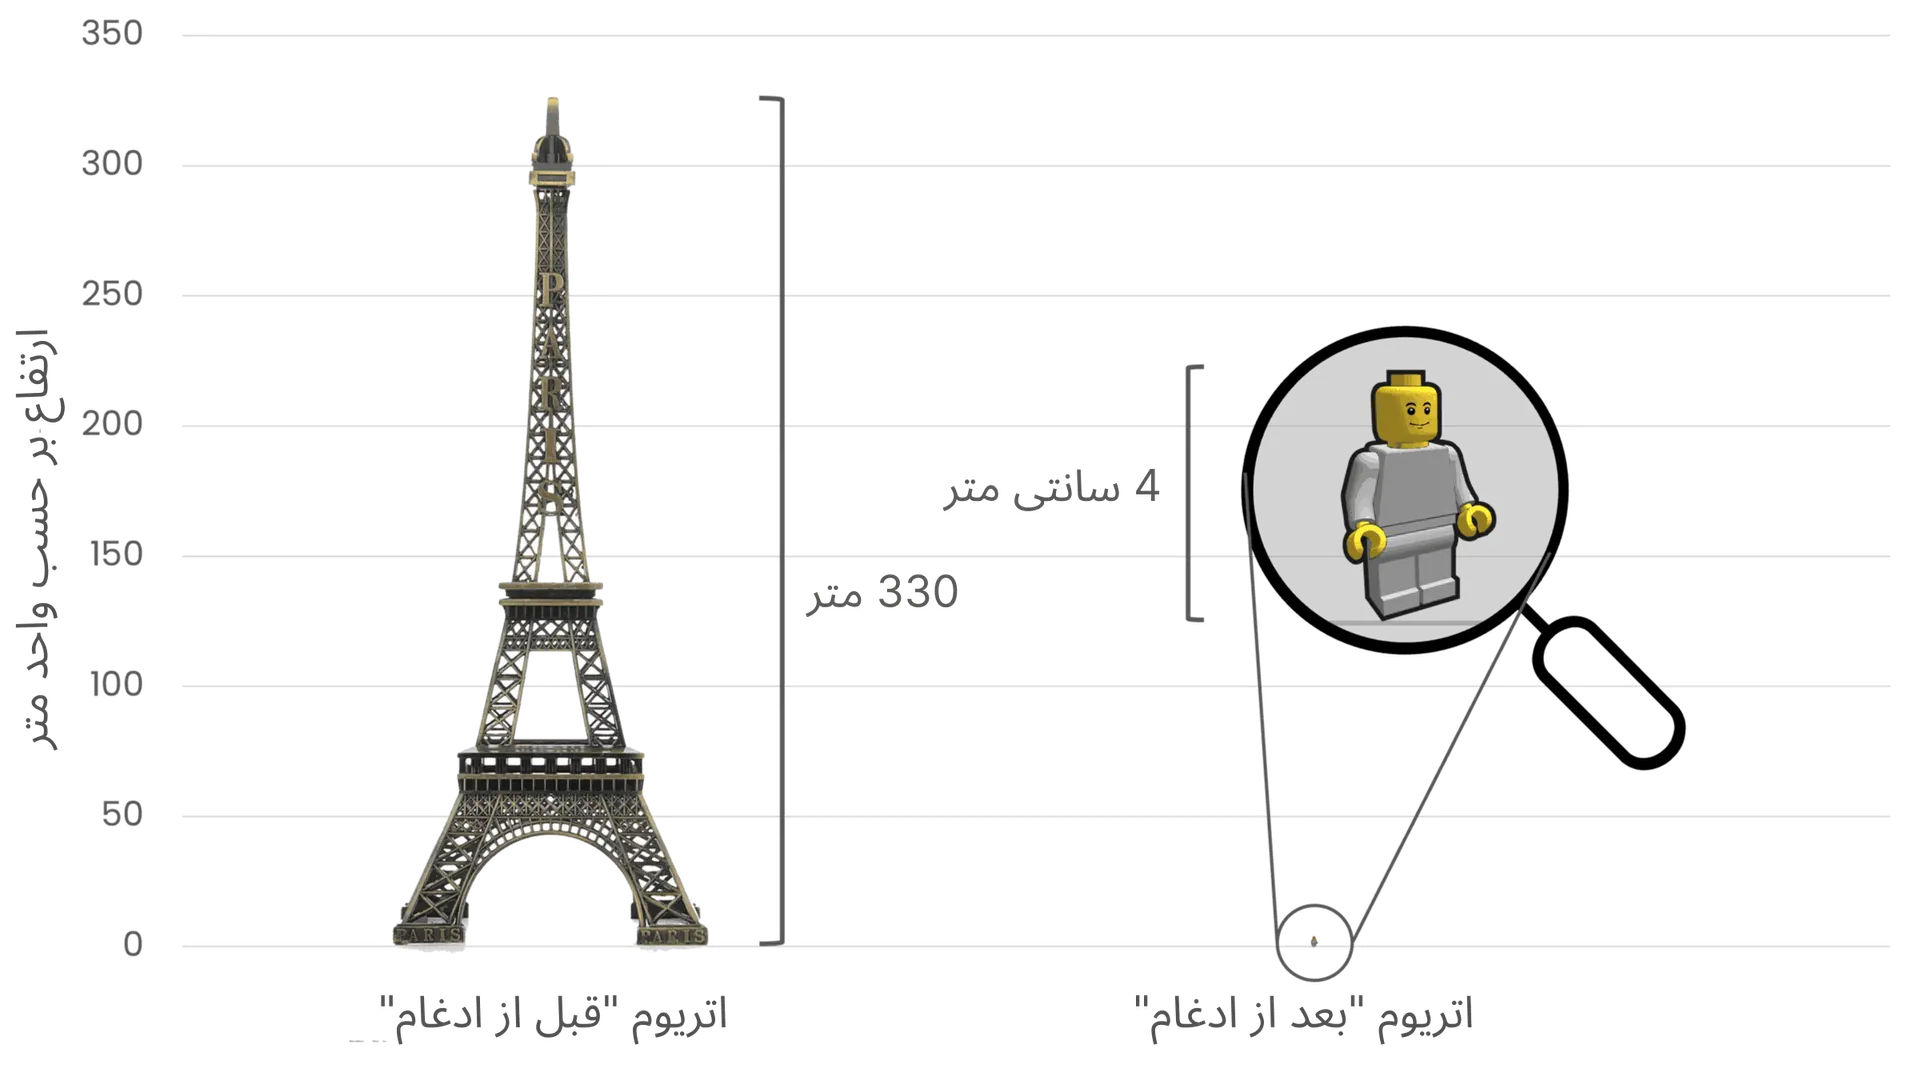 مقایسه مصرف انرژی اتریوم قبل و بعد از ادغام با استفاده از برج ایفل (330 متر ارتفاع) در سمت چپ برای سمبولیزه کردن مصرف انرژی بالا پیش از ادغام،‌ و یک شکل لگوی کوچک 4 سانتی‌متری در سمت راست به نشانه کاهش شدید مصرف انرژی پس از ادغام